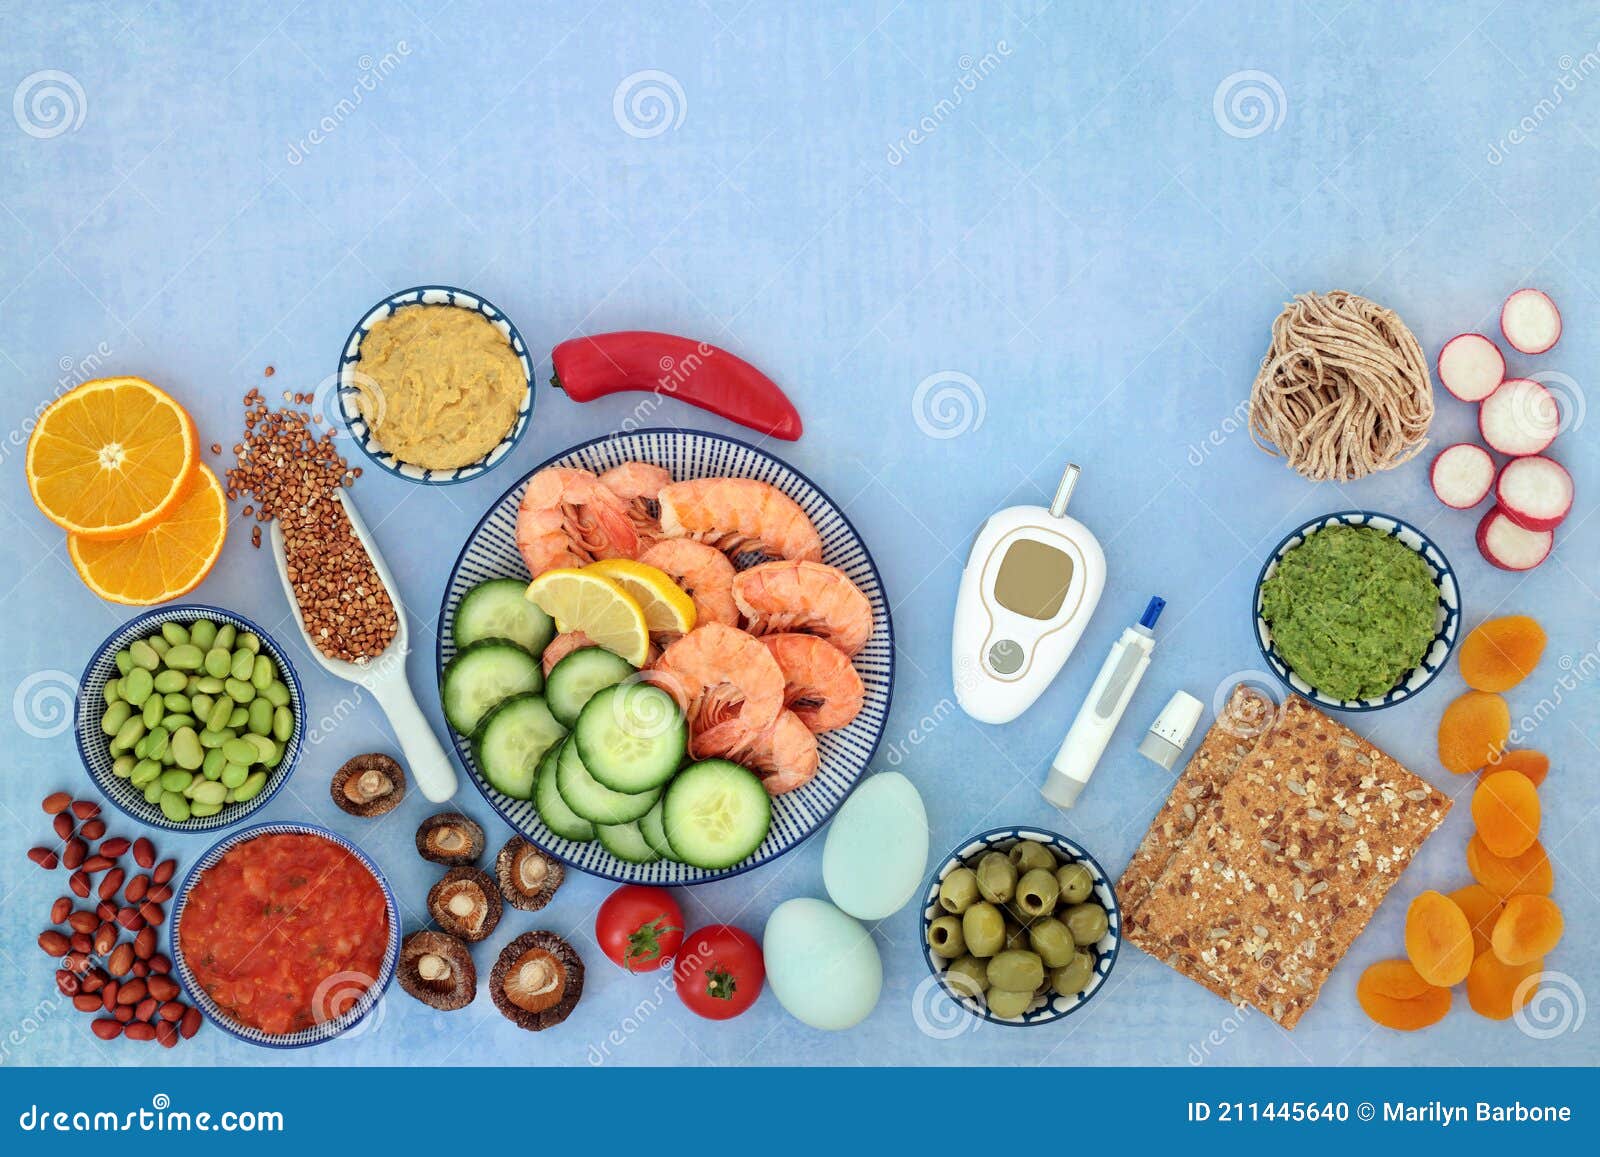 Aliments Santé Pour Un Régime Diabétique à Faible Glycémie Photo stock -  Image du santé, incrément: 211445640